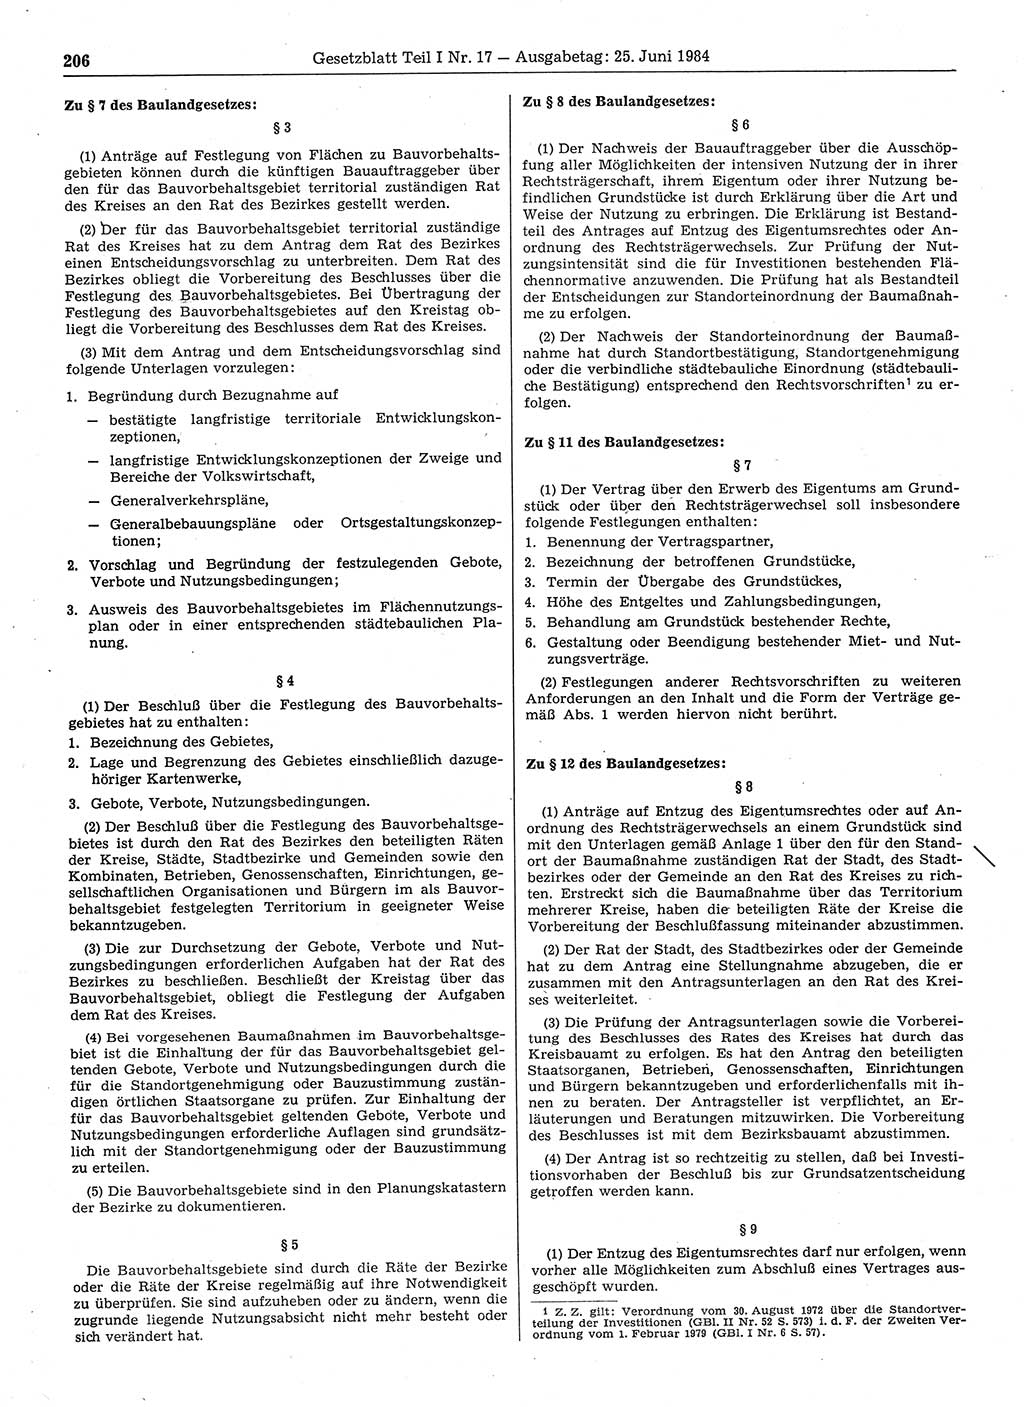 Gesetzblatt (GBl.) der Deutschen Demokratischen Republik (DDR) Teil Ⅰ 1984, Seite 206 (GBl. DDR Ⅰ 1984, S. 206)